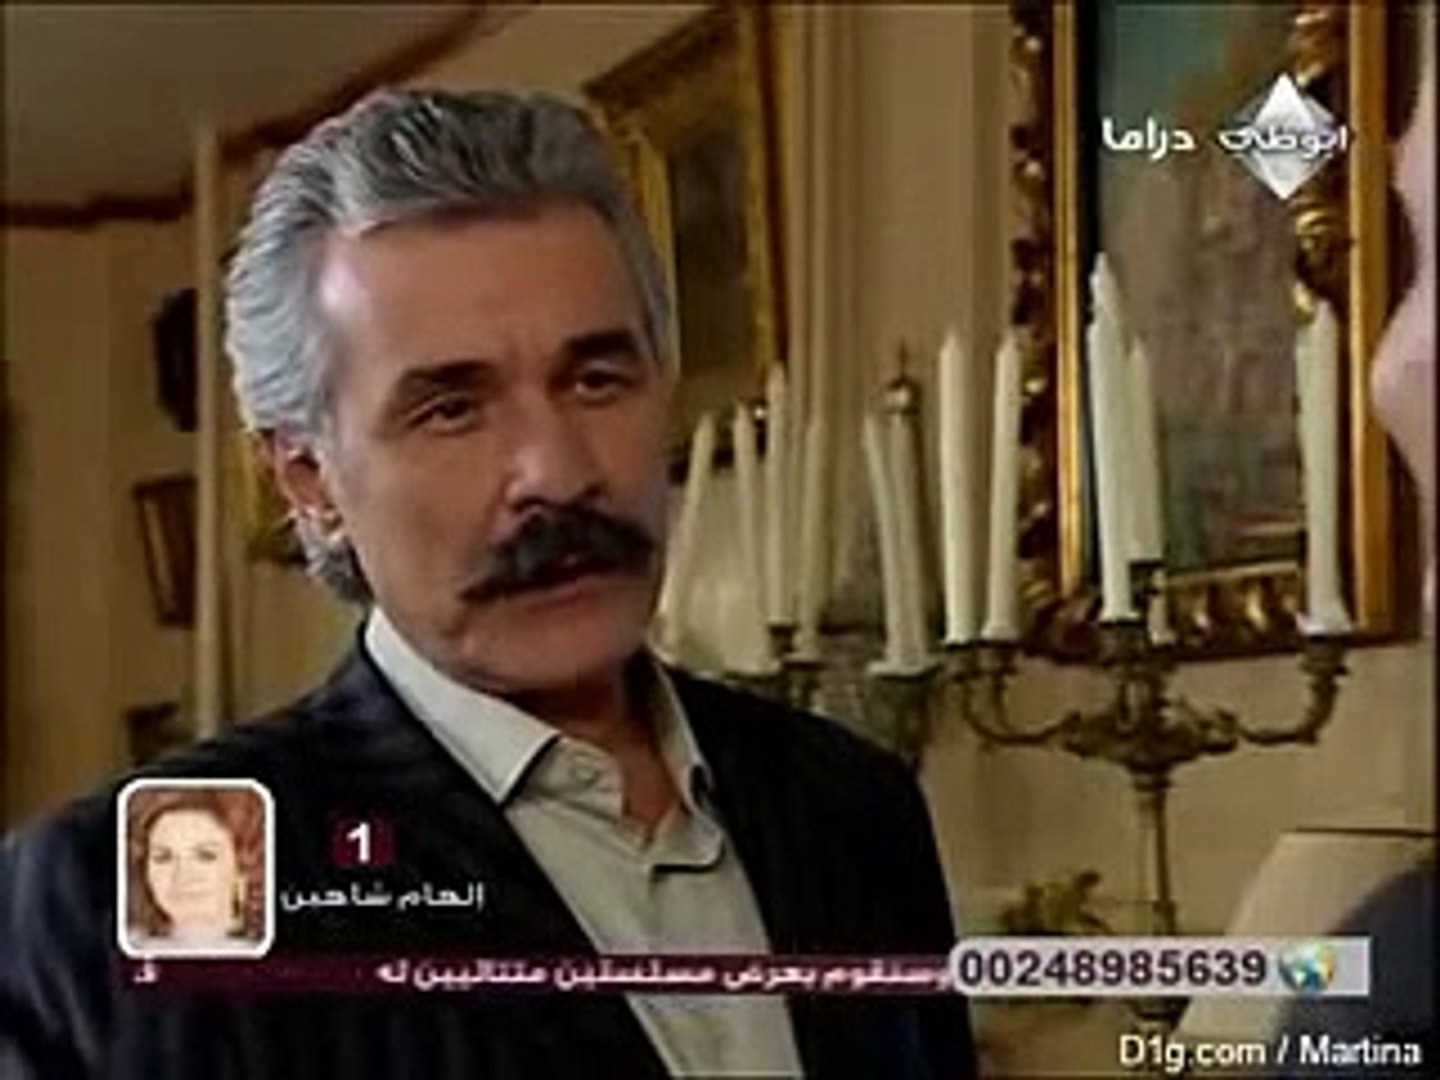 وادي الذئاب الجزء الثاني الحلقة 40 مدبلجة للعربية - فيديو Dailymotion